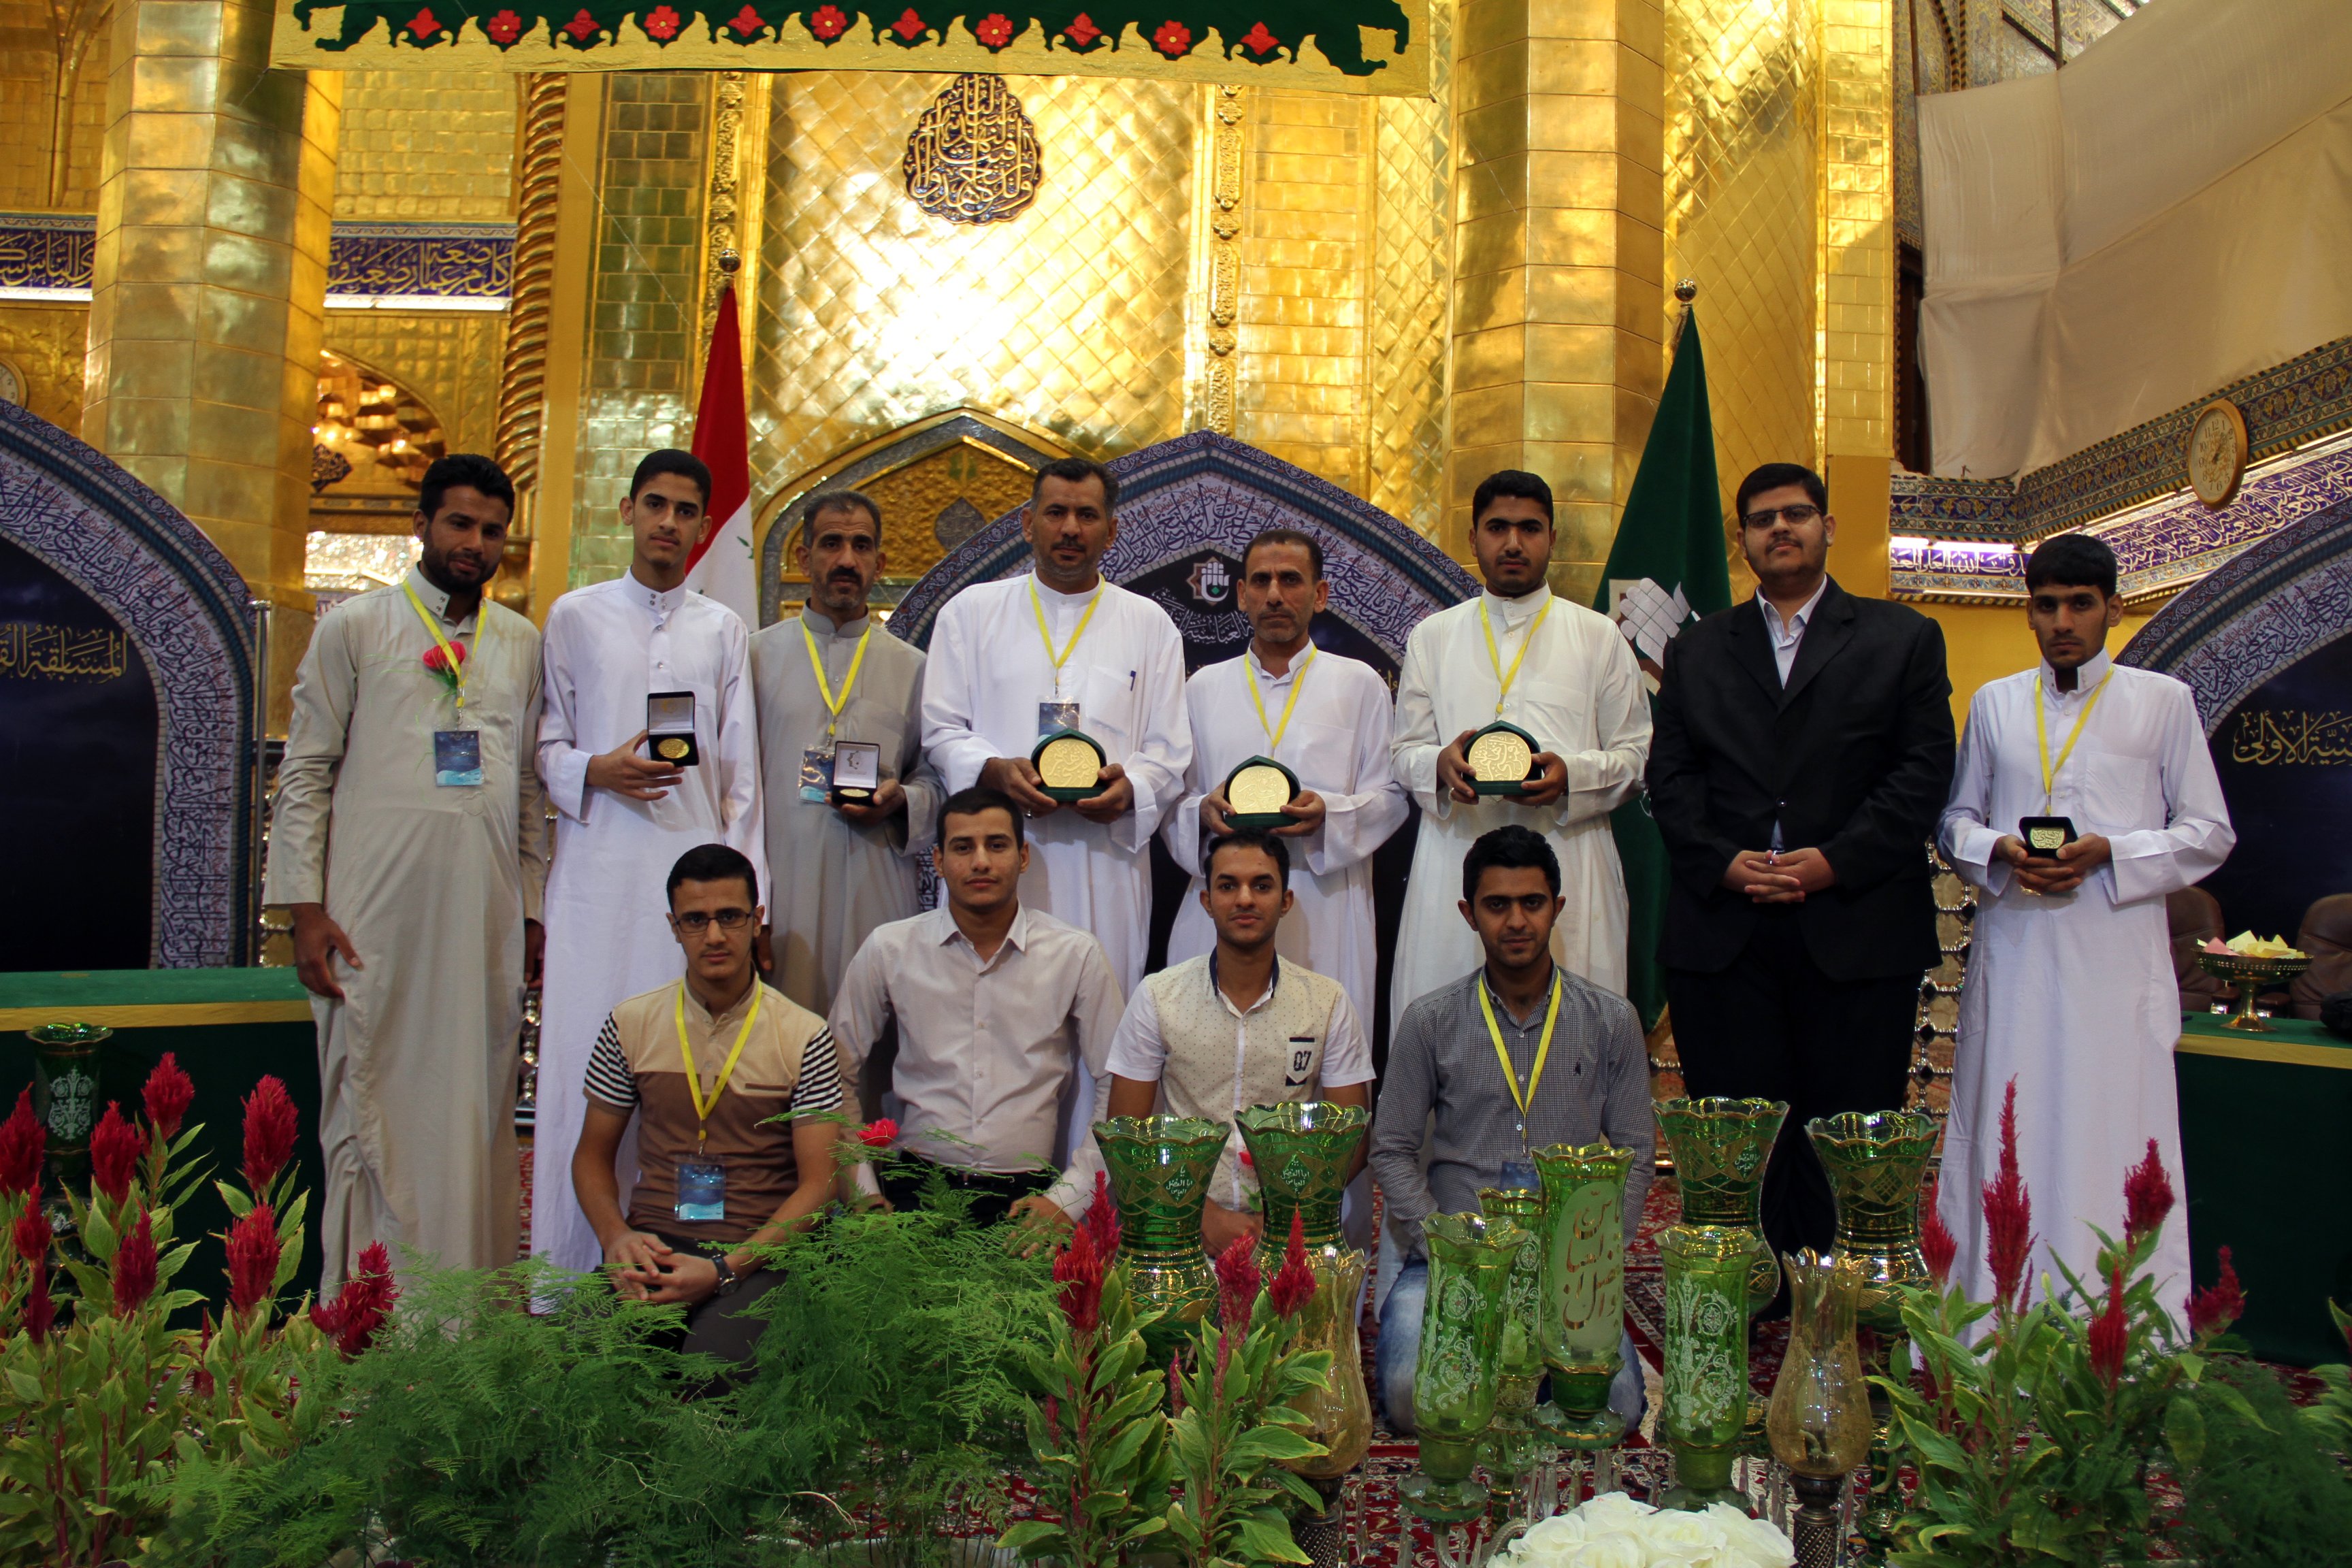 الصحن العباسي الشريف يحتضن حفل ختام فعاليات المسابقة القرآنية الفرقية الوطنية الأولى